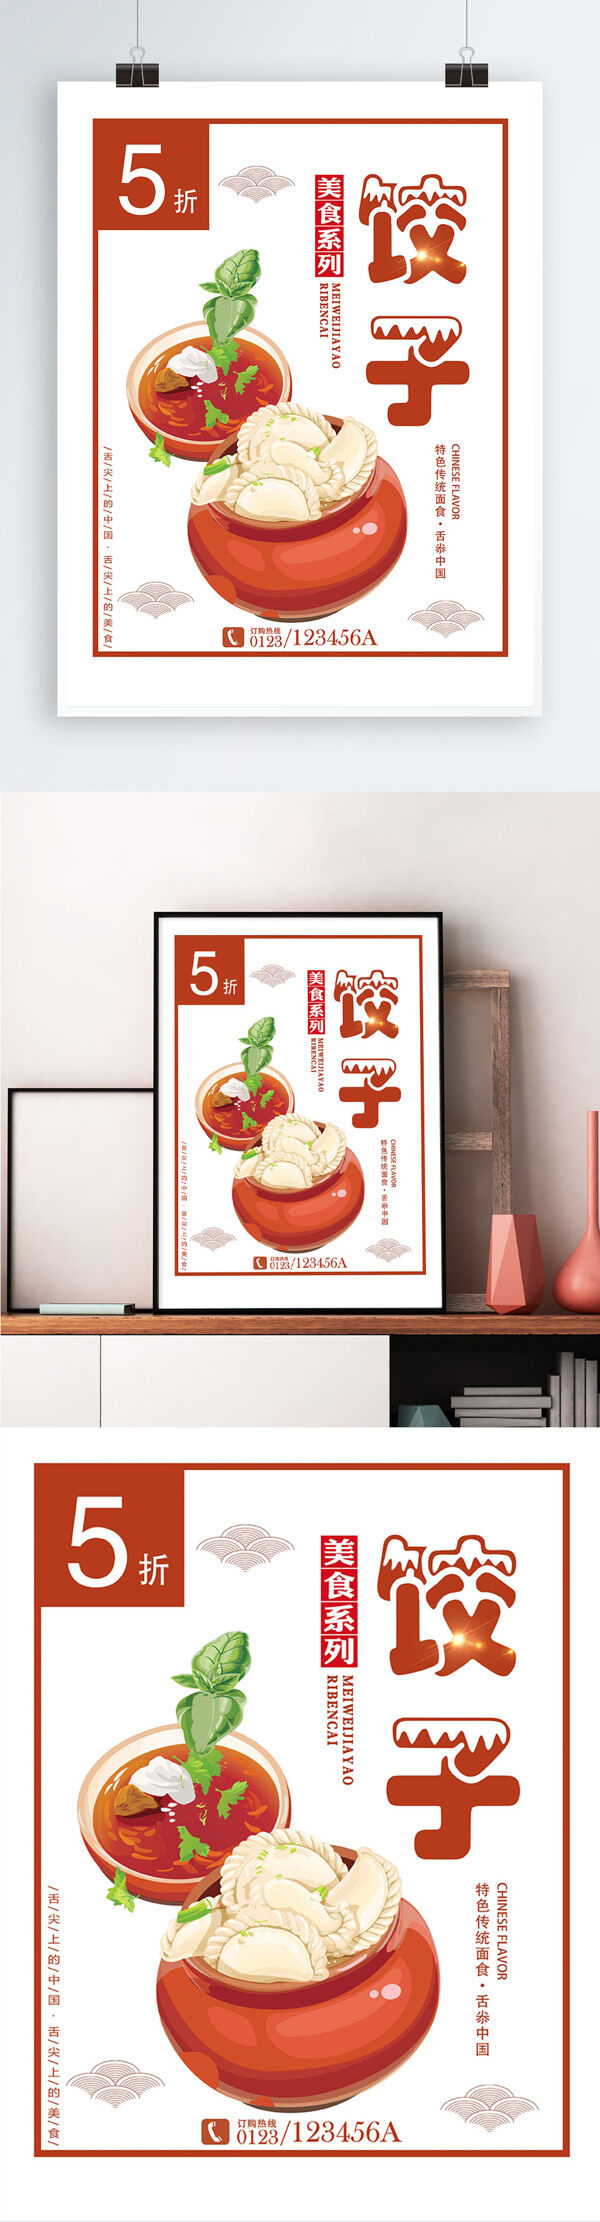 白色背景简约大气美味饺子宣传海报